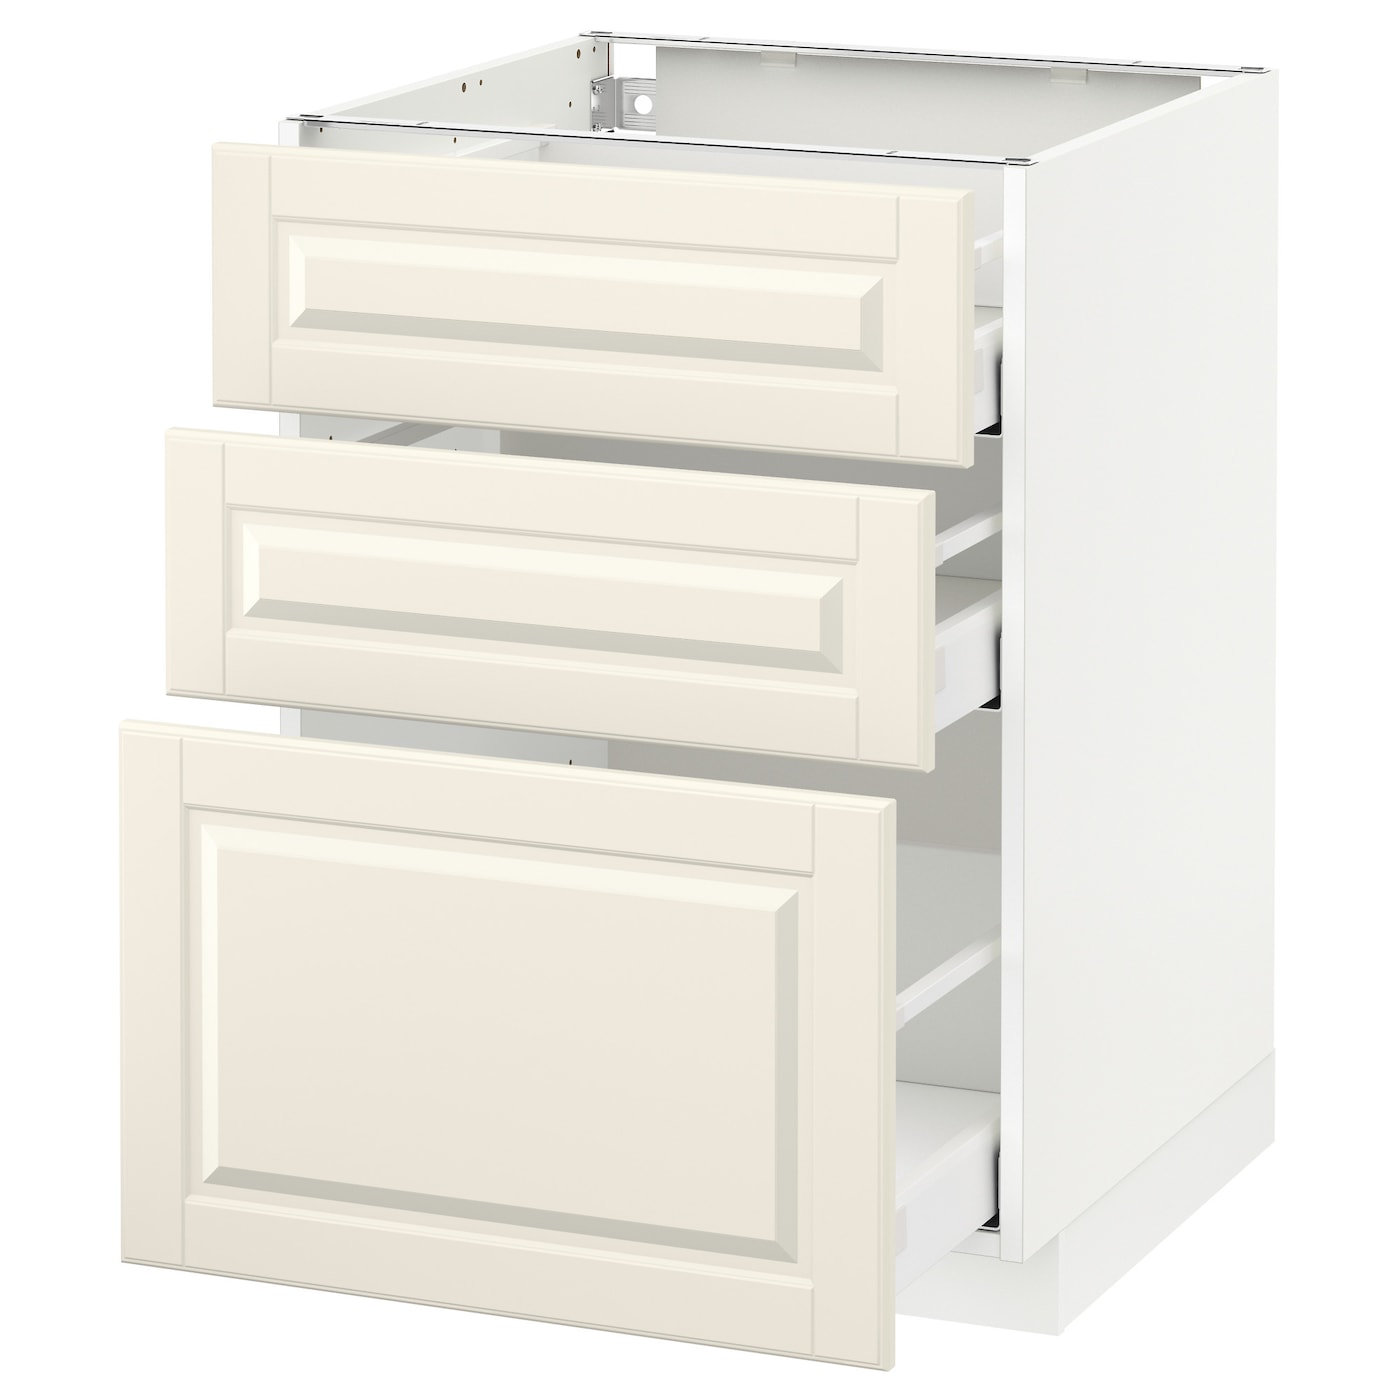 Напольный кухонный шкаф  - IKEA METOD MAXIMERA, 88x62x60см, белый/светло-бежевый, МЕТОД МАКСИМЕРА ИКЕА